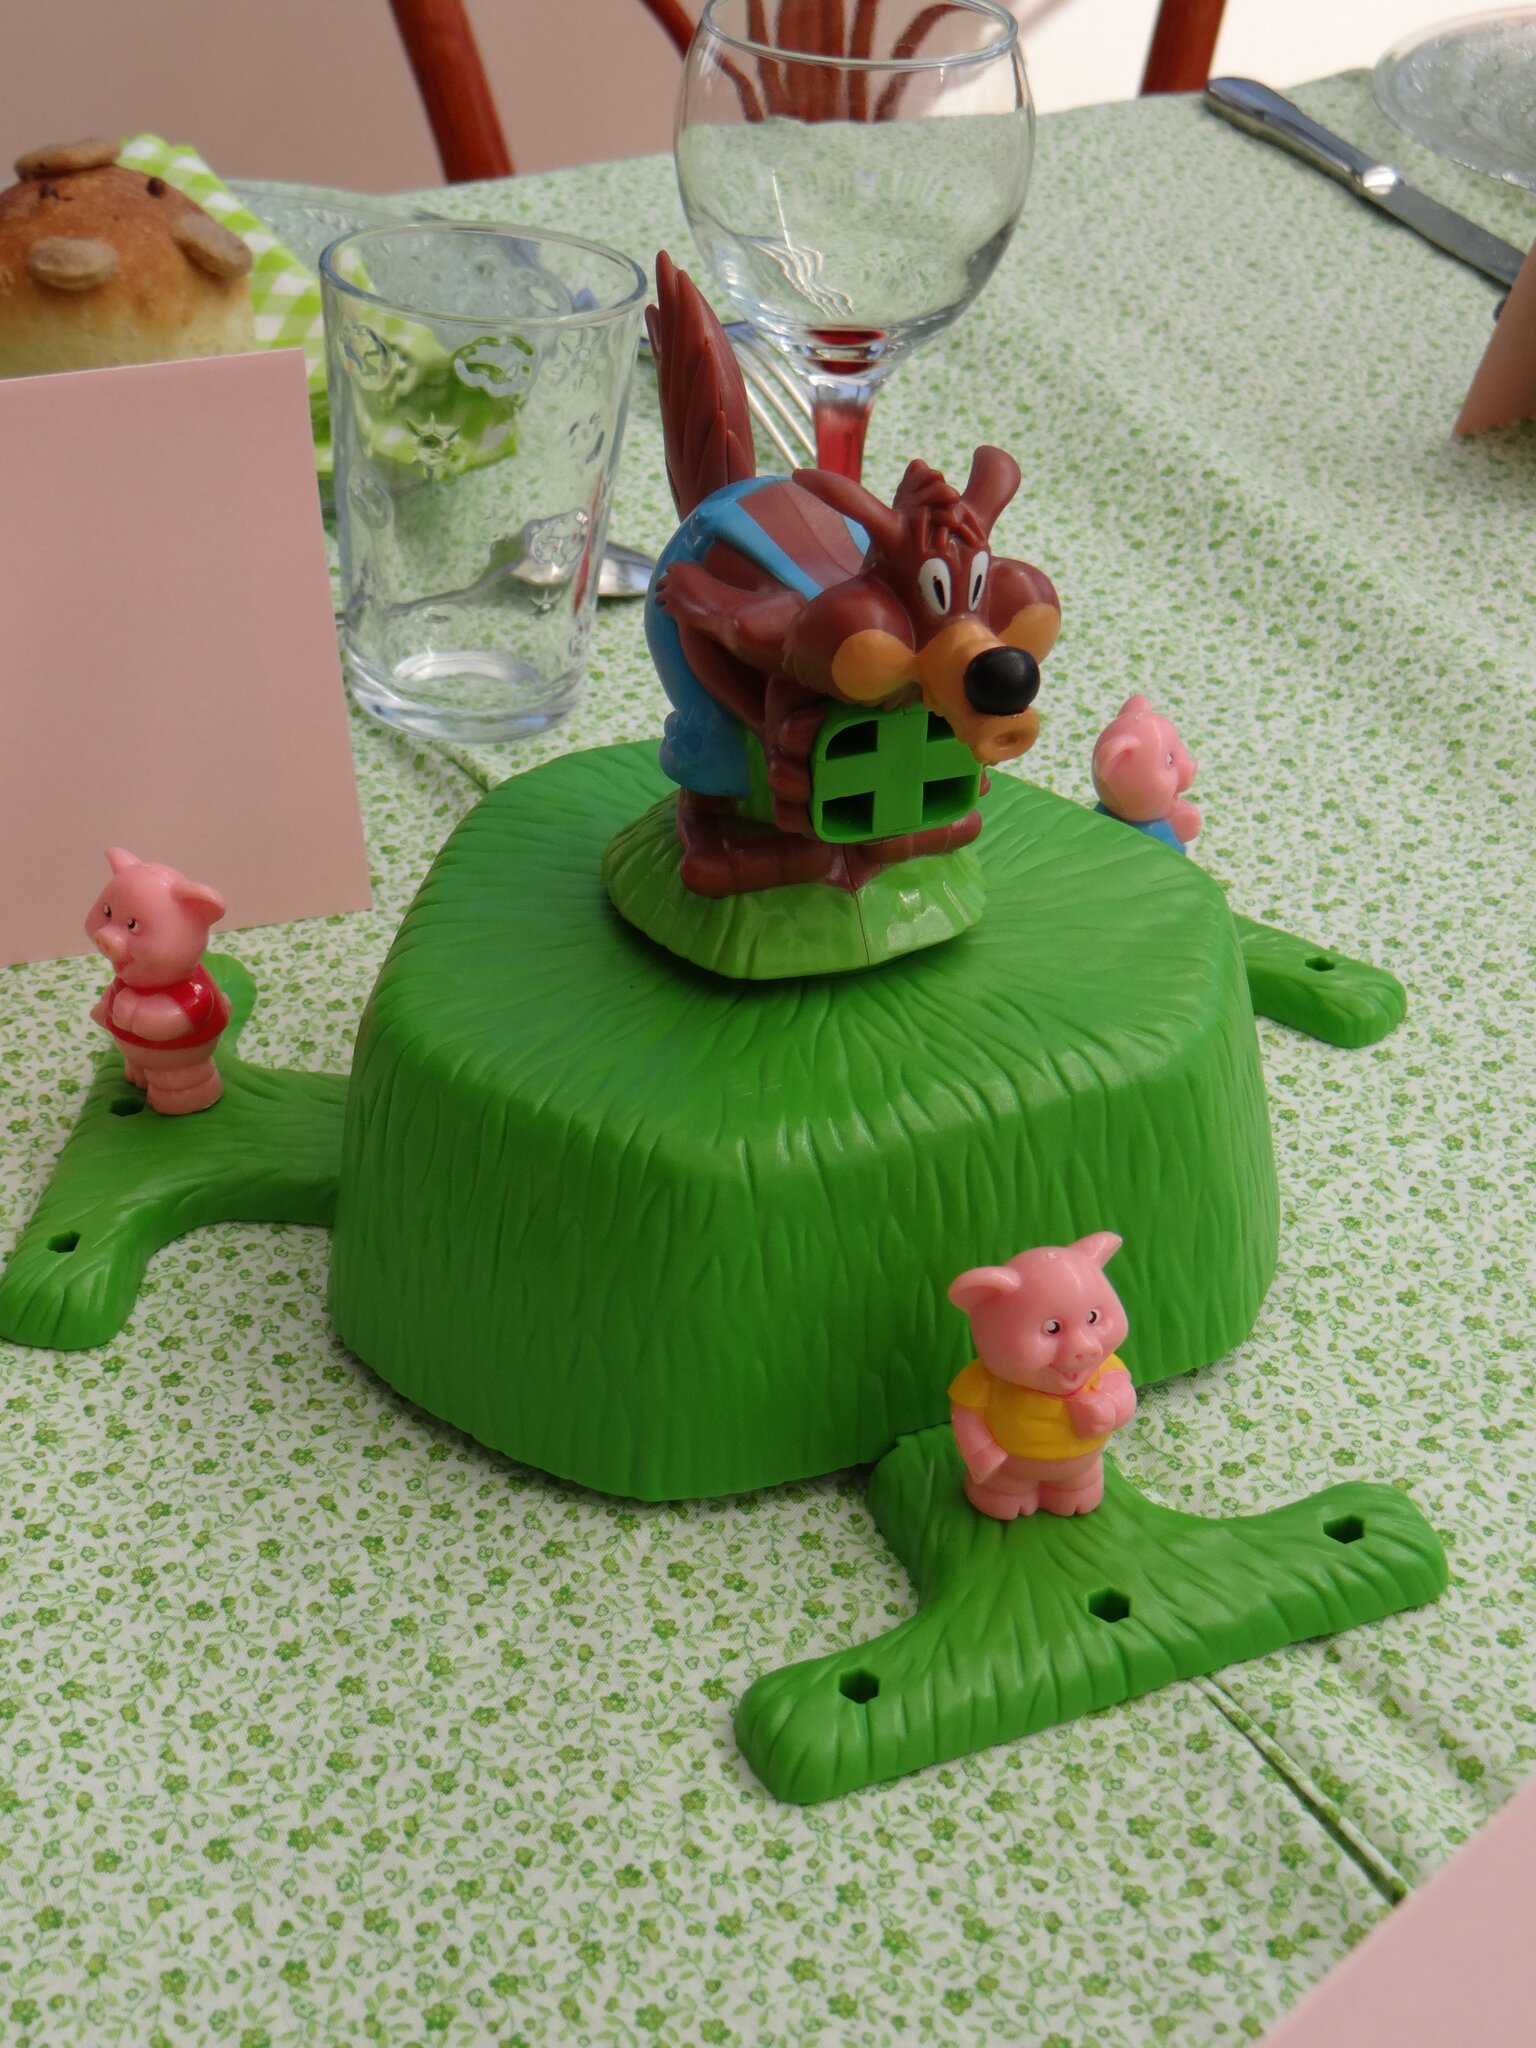 Gâteau 3 petits cochons / 3 little pigs cake